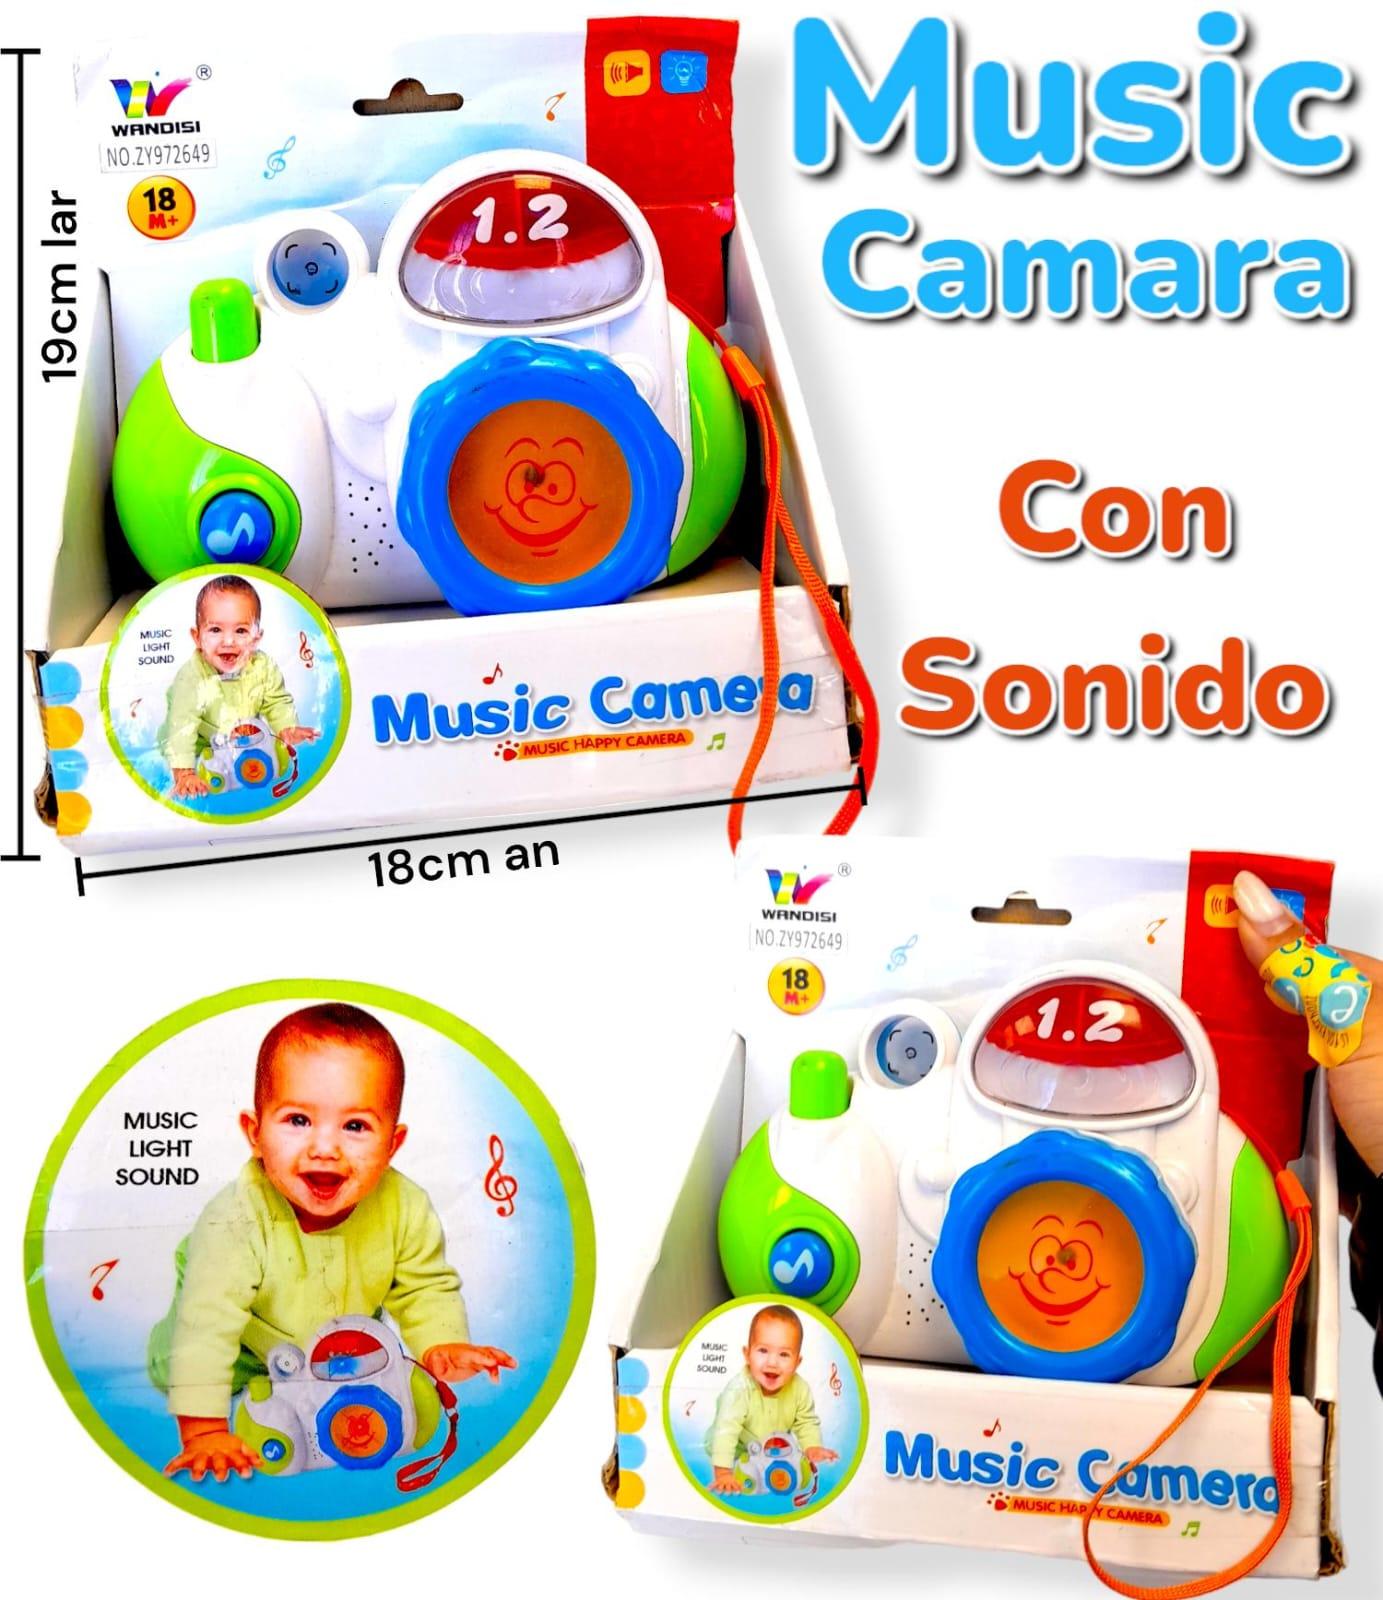 Music Camara Con Sonido